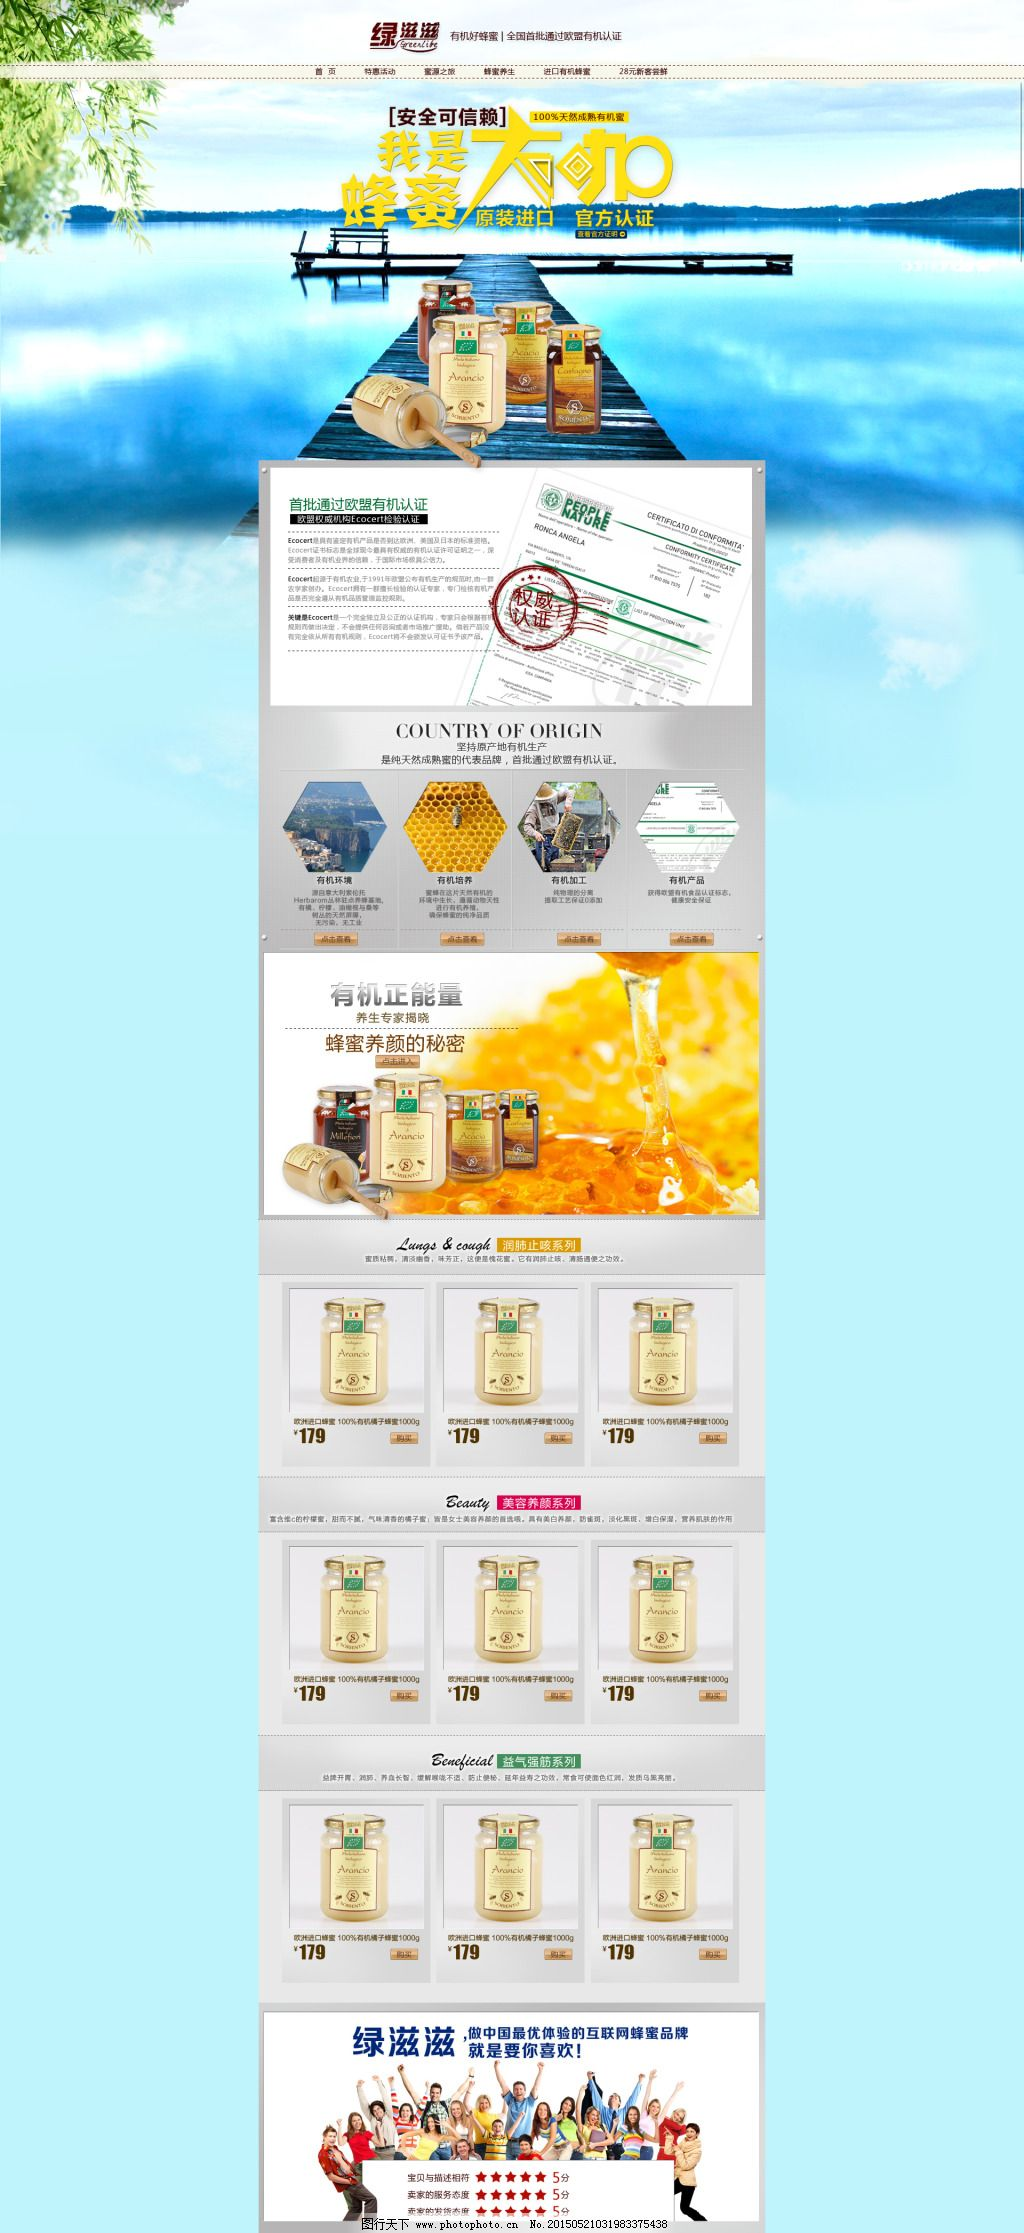 ‘~淘宝蜂蜜促销页面平面创作PSD素材图片_食品茶饮_电商图片-  ~’ 的图片